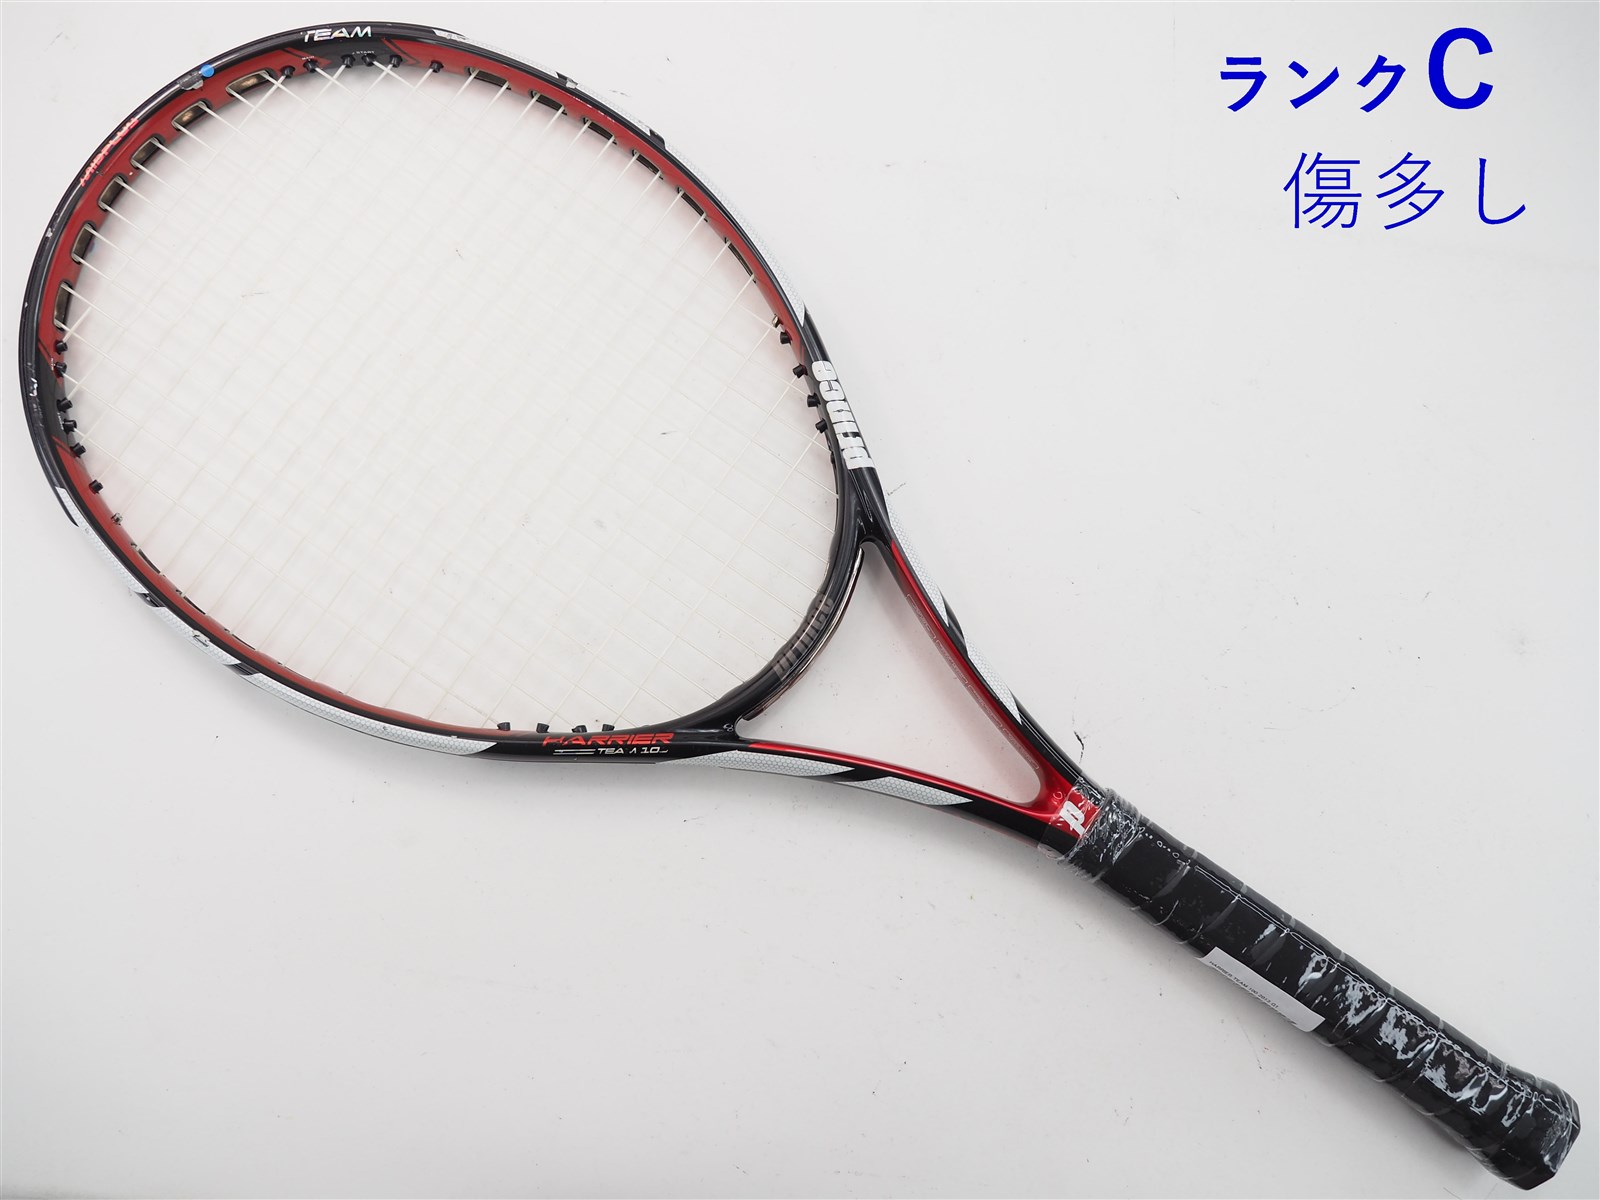 テニスラケット プリンス ハリアー チーム 100 2013年モデル (G2